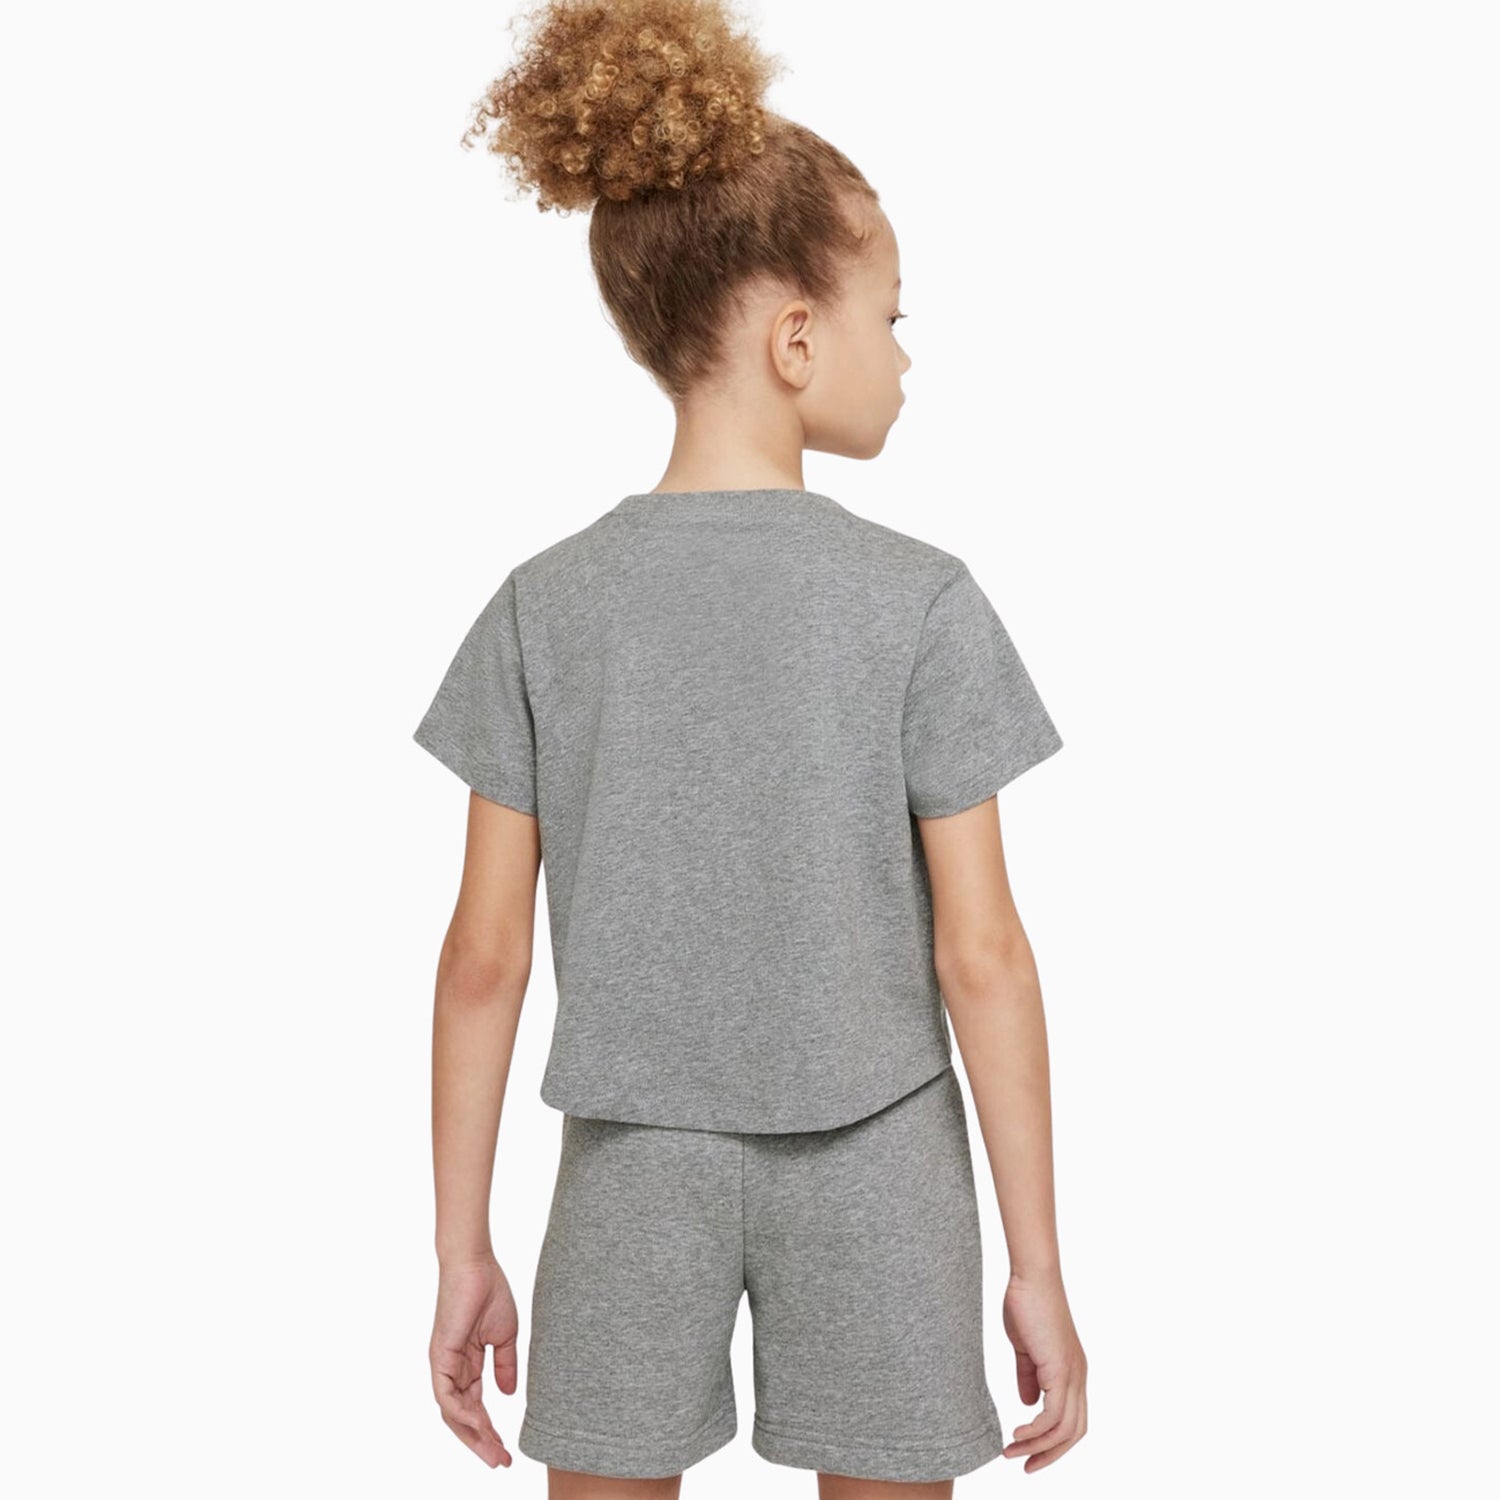 nike-kids-sportswear-short-sleeve-t-shirt-da6925-093